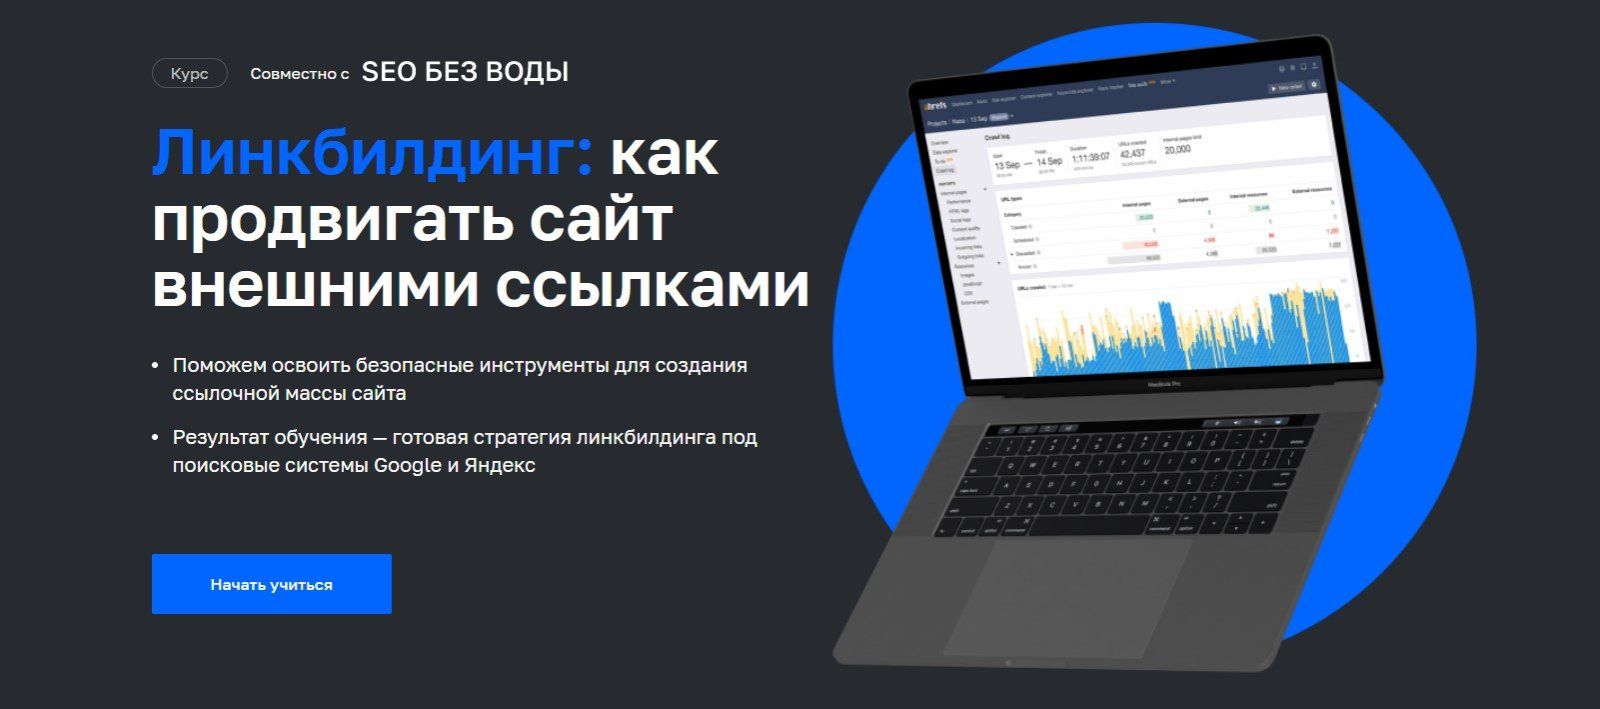 Продвижение сайтов реклама кремлевская 25 авигроуп avigroup. Линкбилдинг сайтов. Как продвигать сайт. Нетология лого.